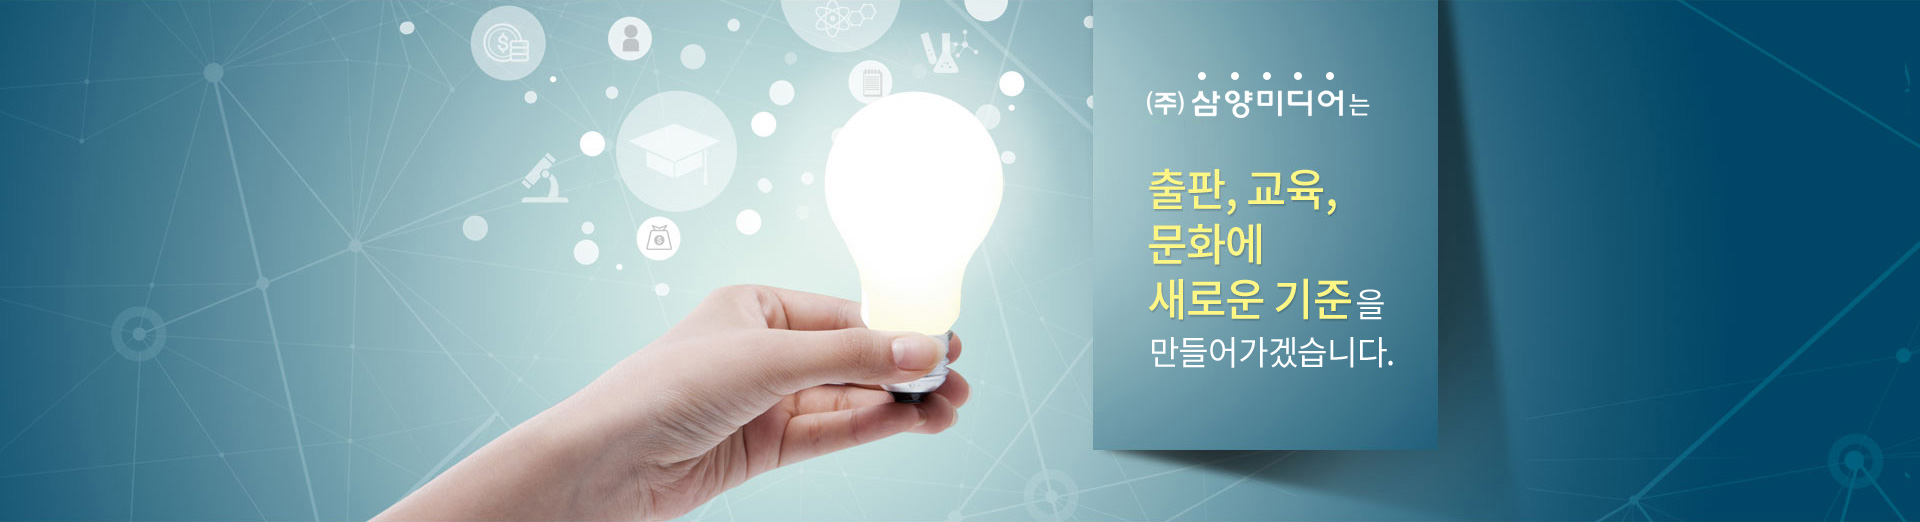 삼양미디어는 대한민국 출판, 교육, 문화에 새로운 기준이 될 것입니다.